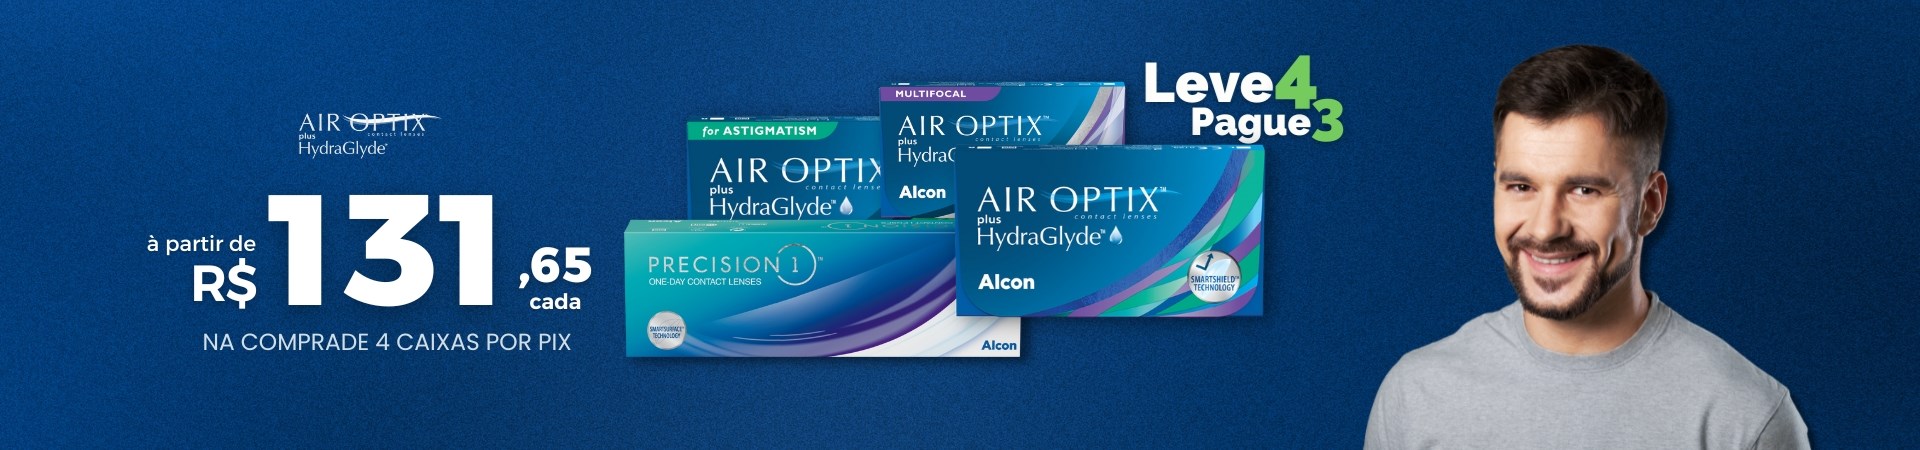 Lentes de Contato Air Optix em Promoção